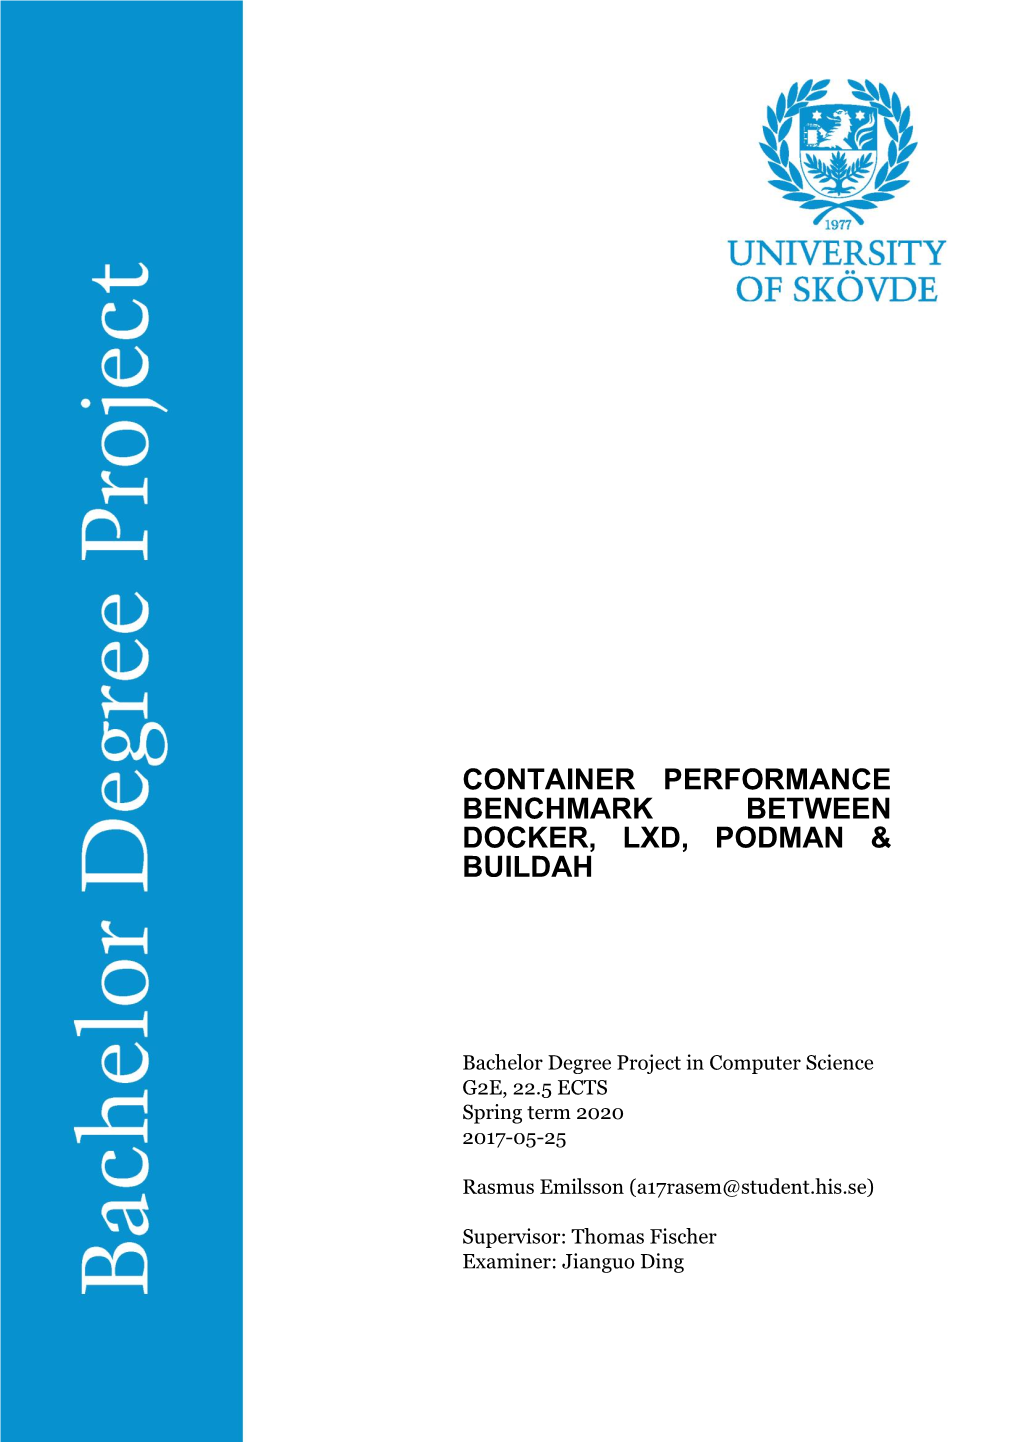 Container Performance Benchmark Between Docker, Lxd, Podman & Buildah